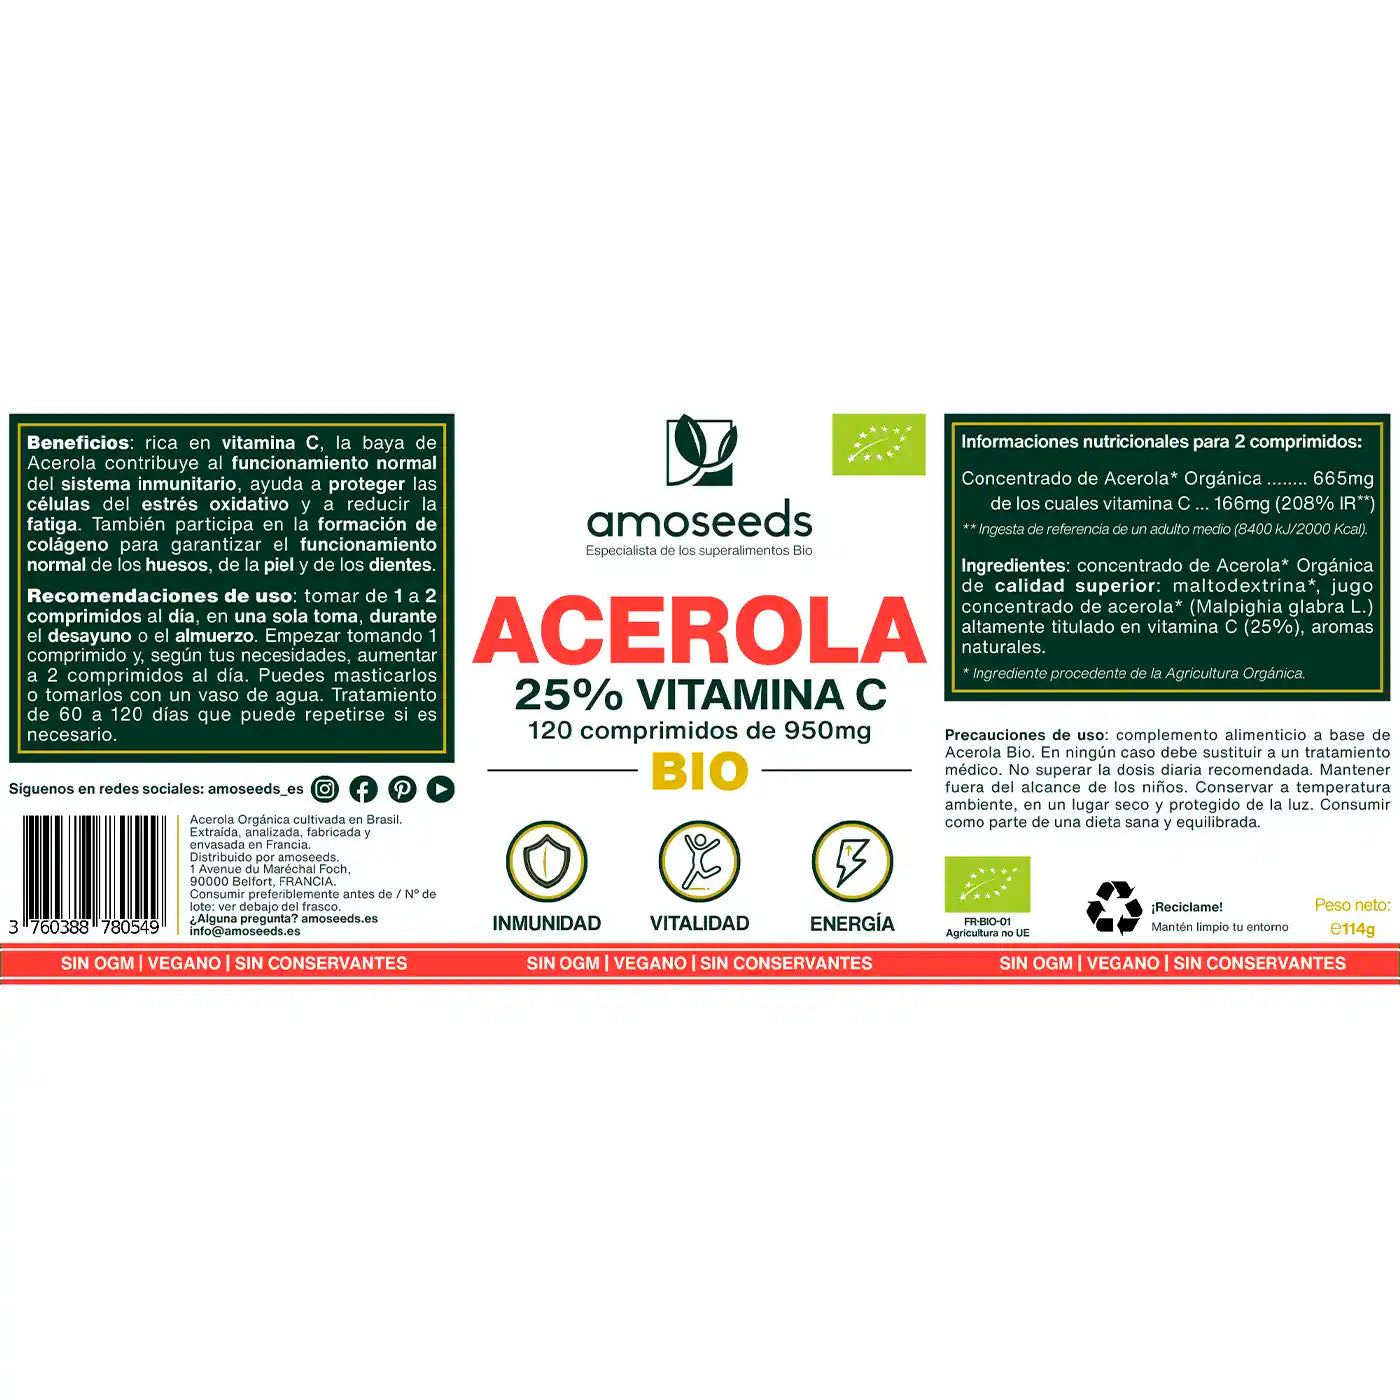 Acerola bio amoseeds especialista de los superalimentos bio